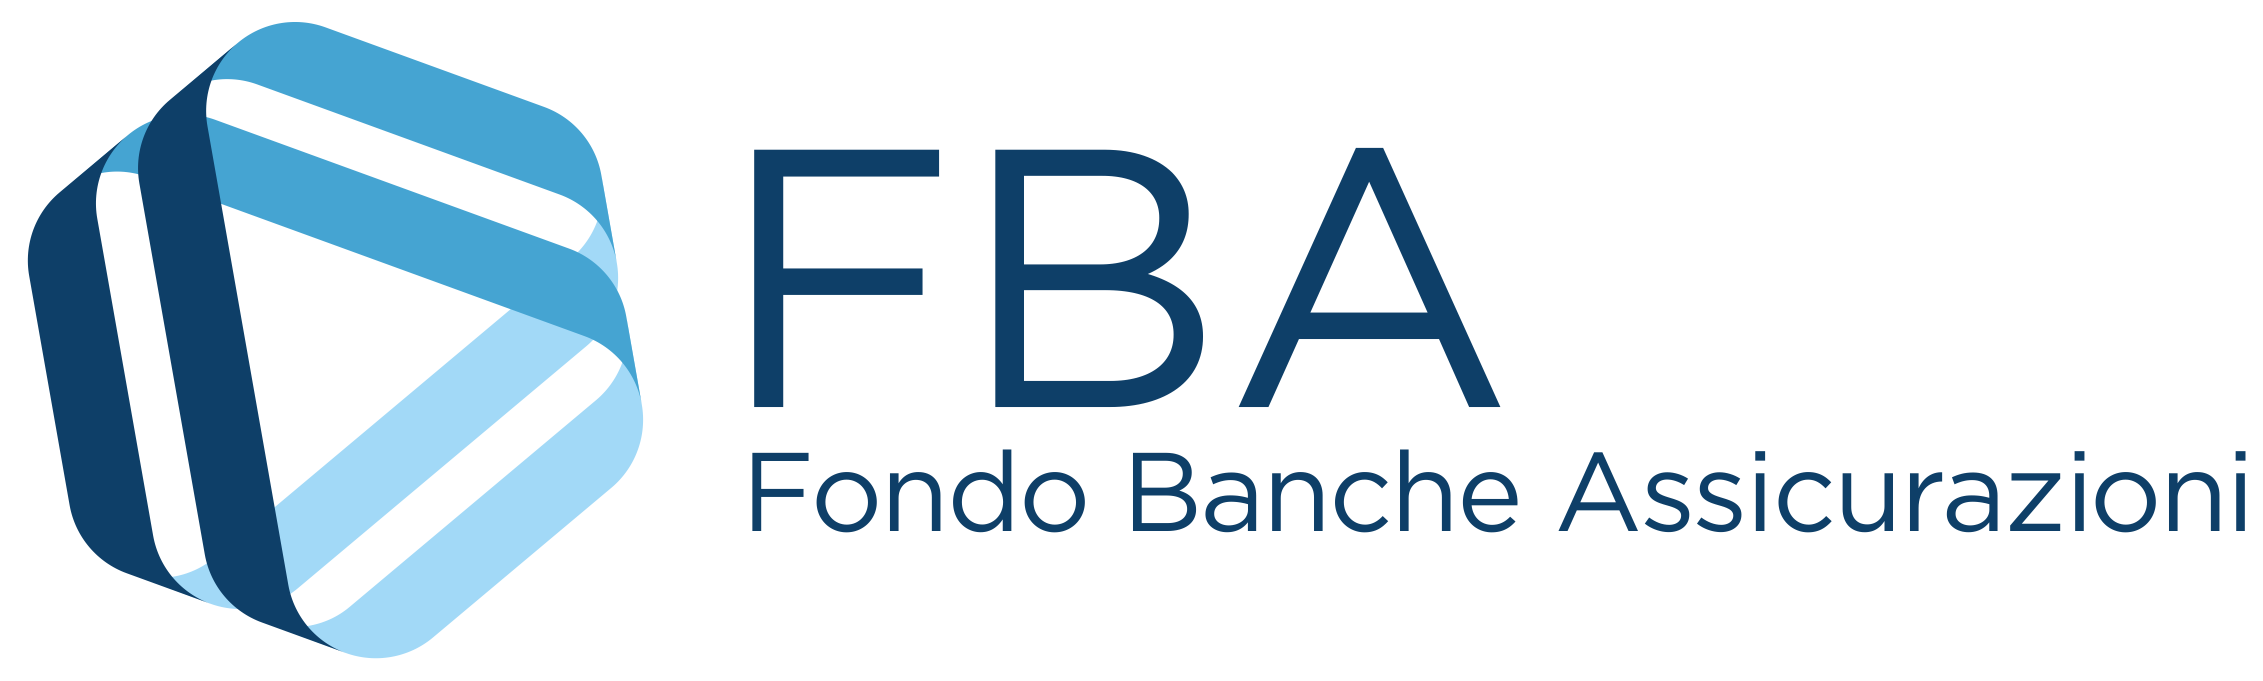 Formazione finanziata brescia: logo Fondo Banche Assicurazioni - In Training